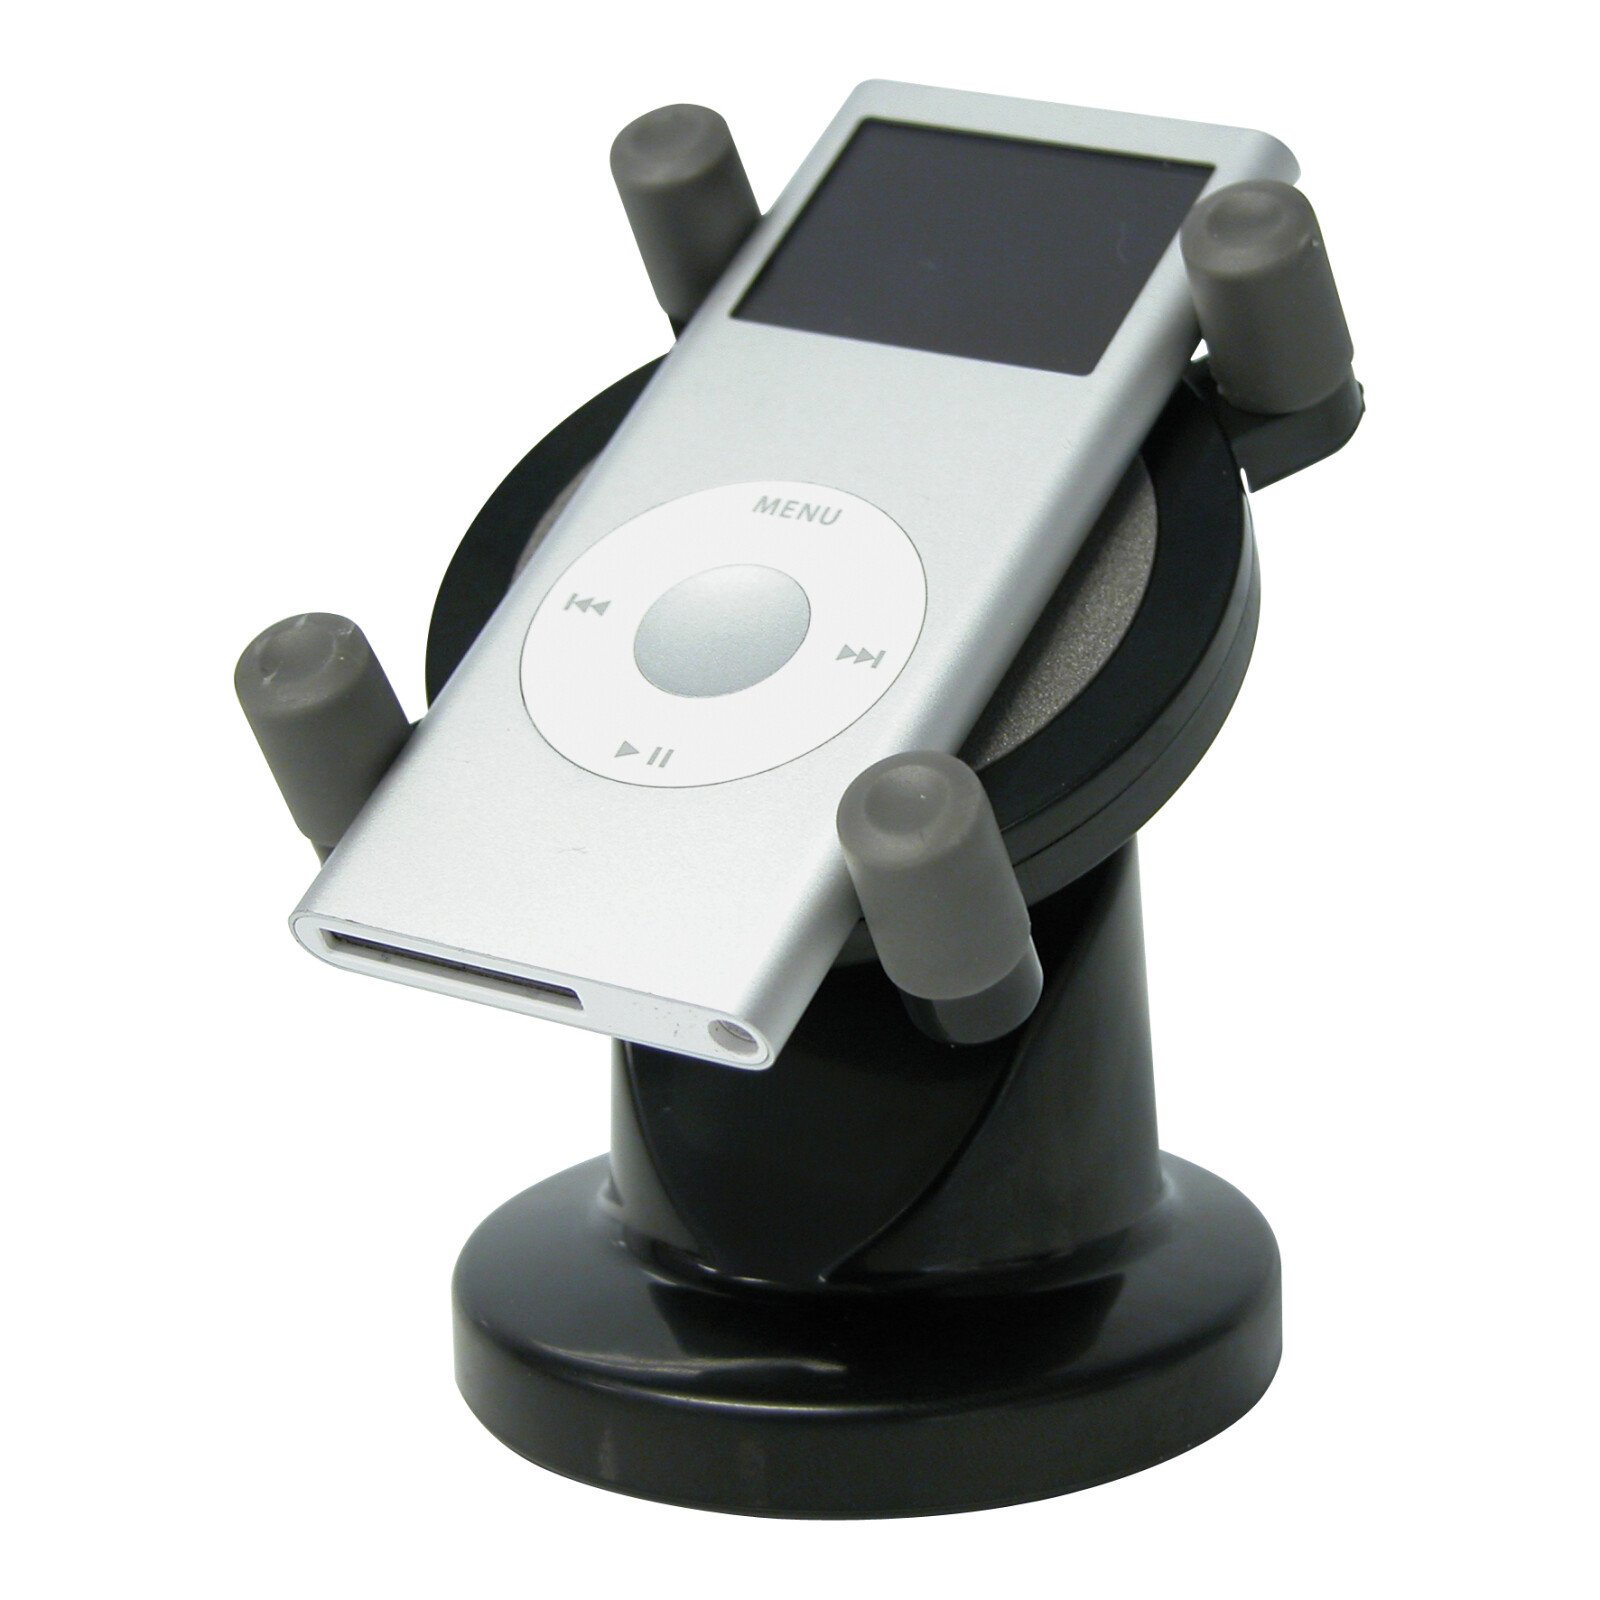 Suport telefon mobil si iPod universal Carpoint thumb